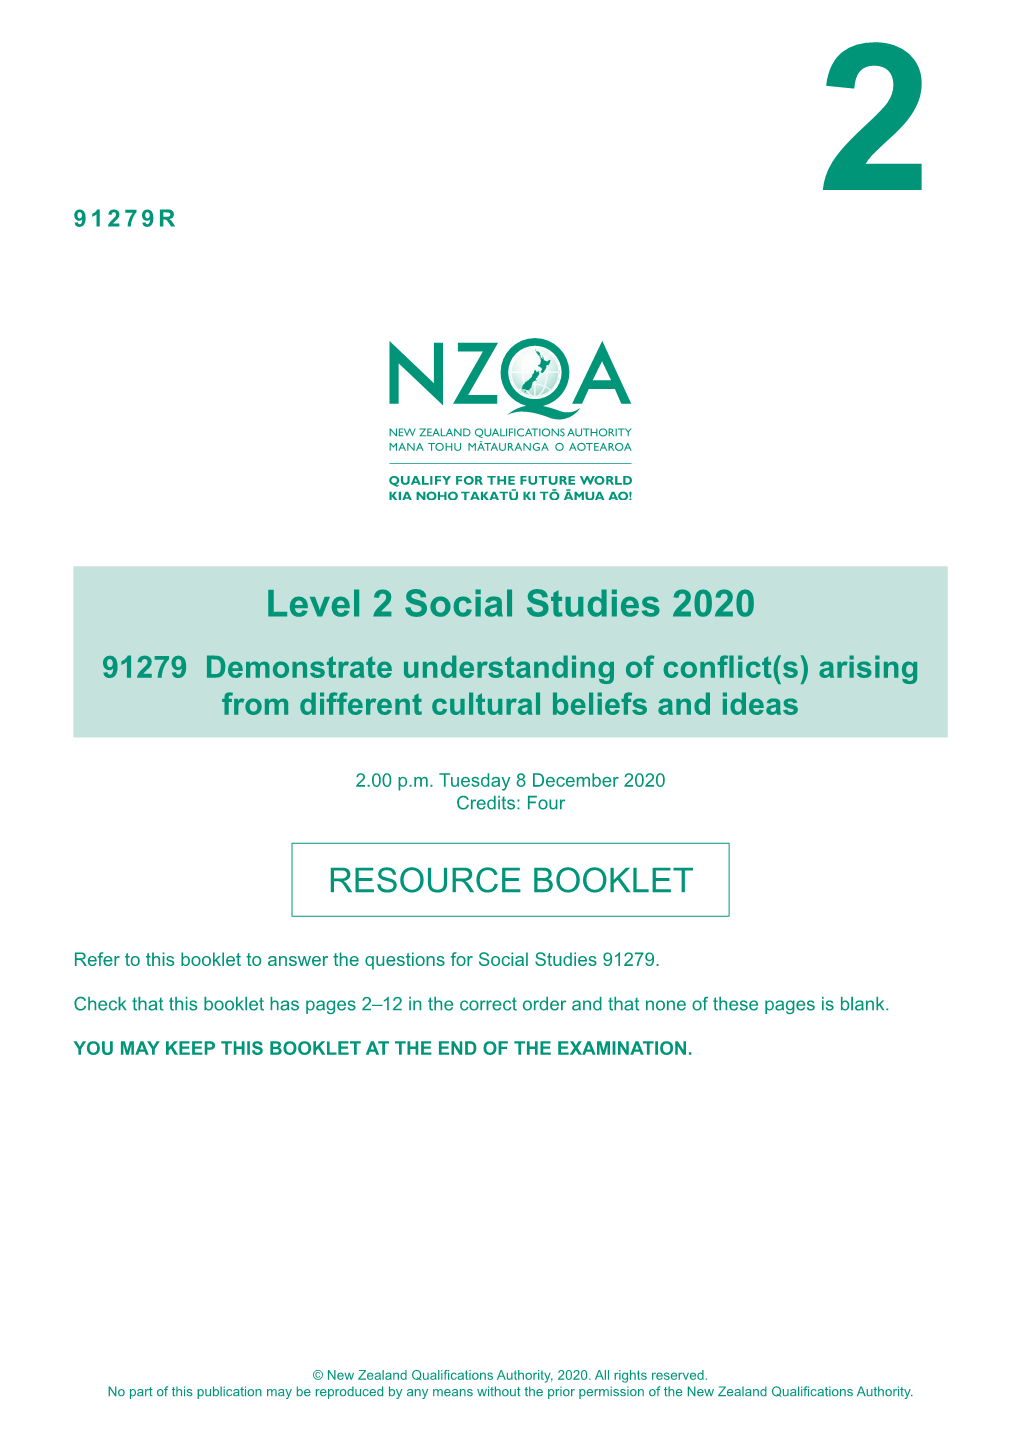 Level 2 Social Studies (91279) 2020